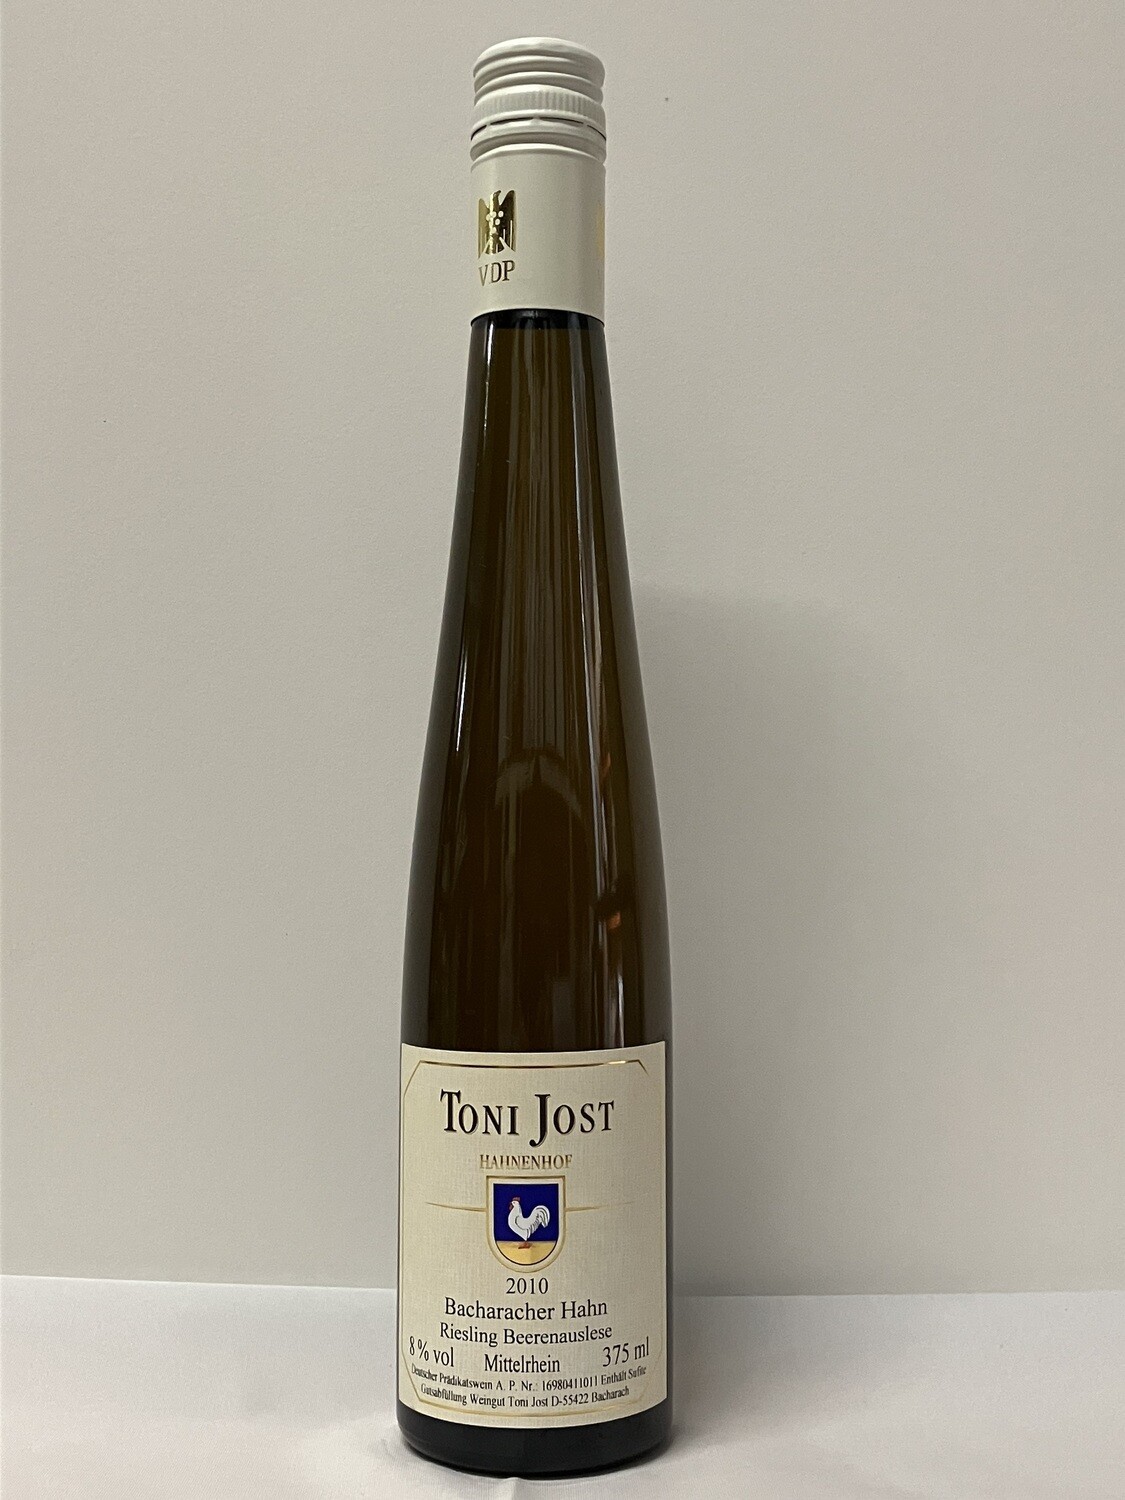 Riesling Beerenauslese 2010 0,375 l Bacharach Hahn Toni Jost (Mittelrhein)